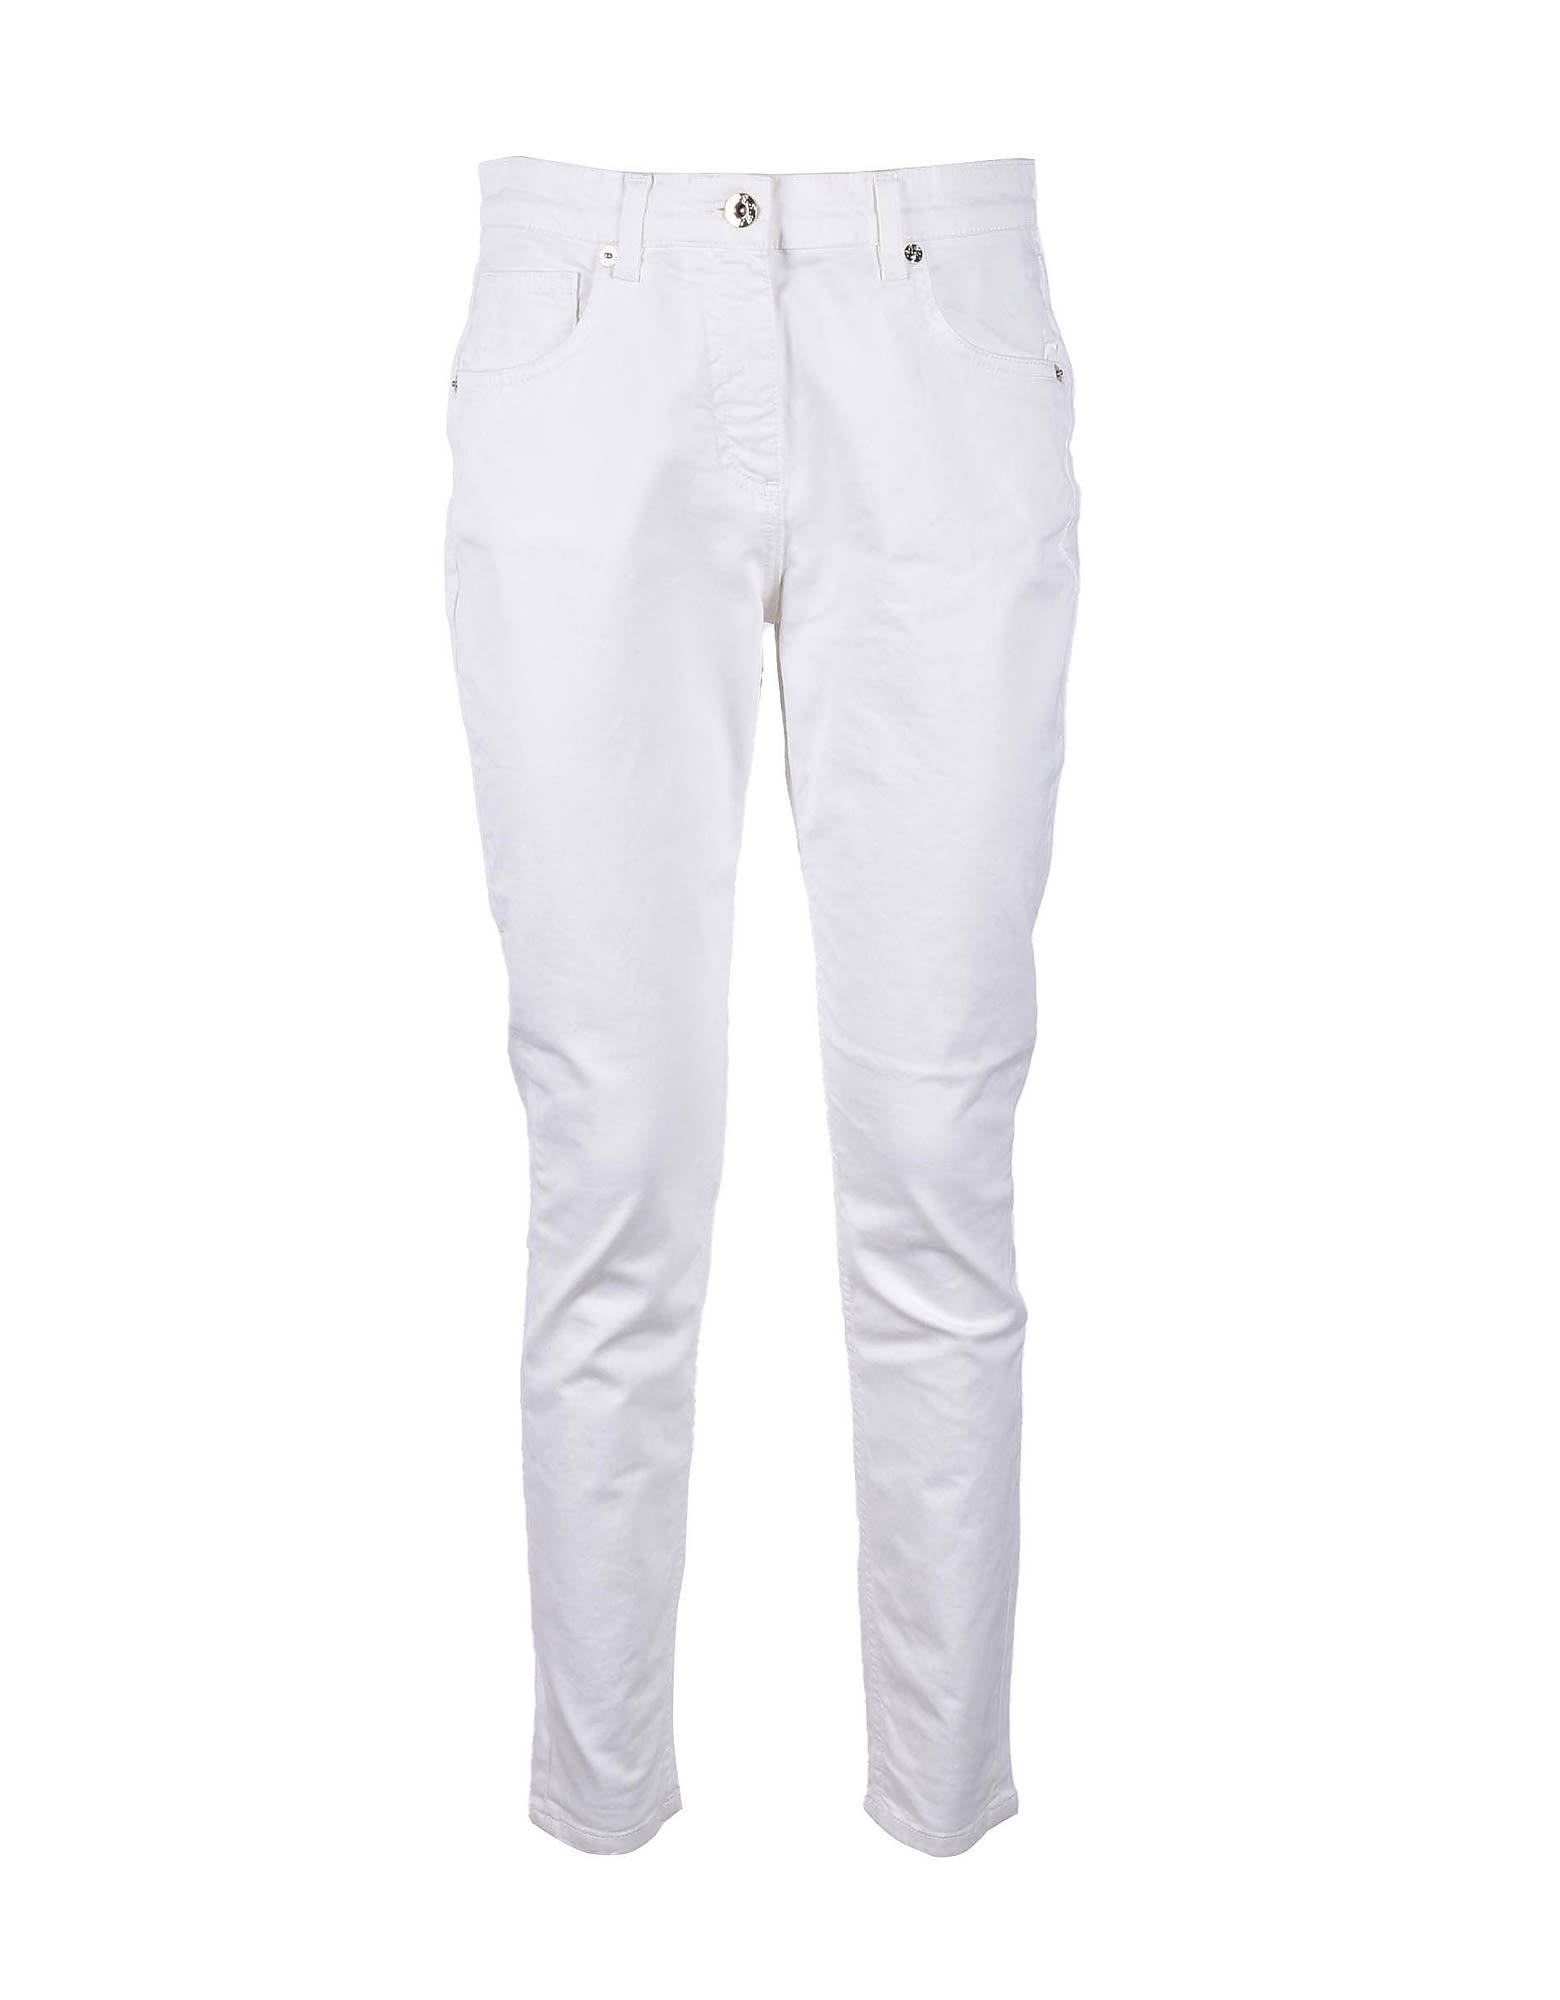 Blumarine Womens White Jeans